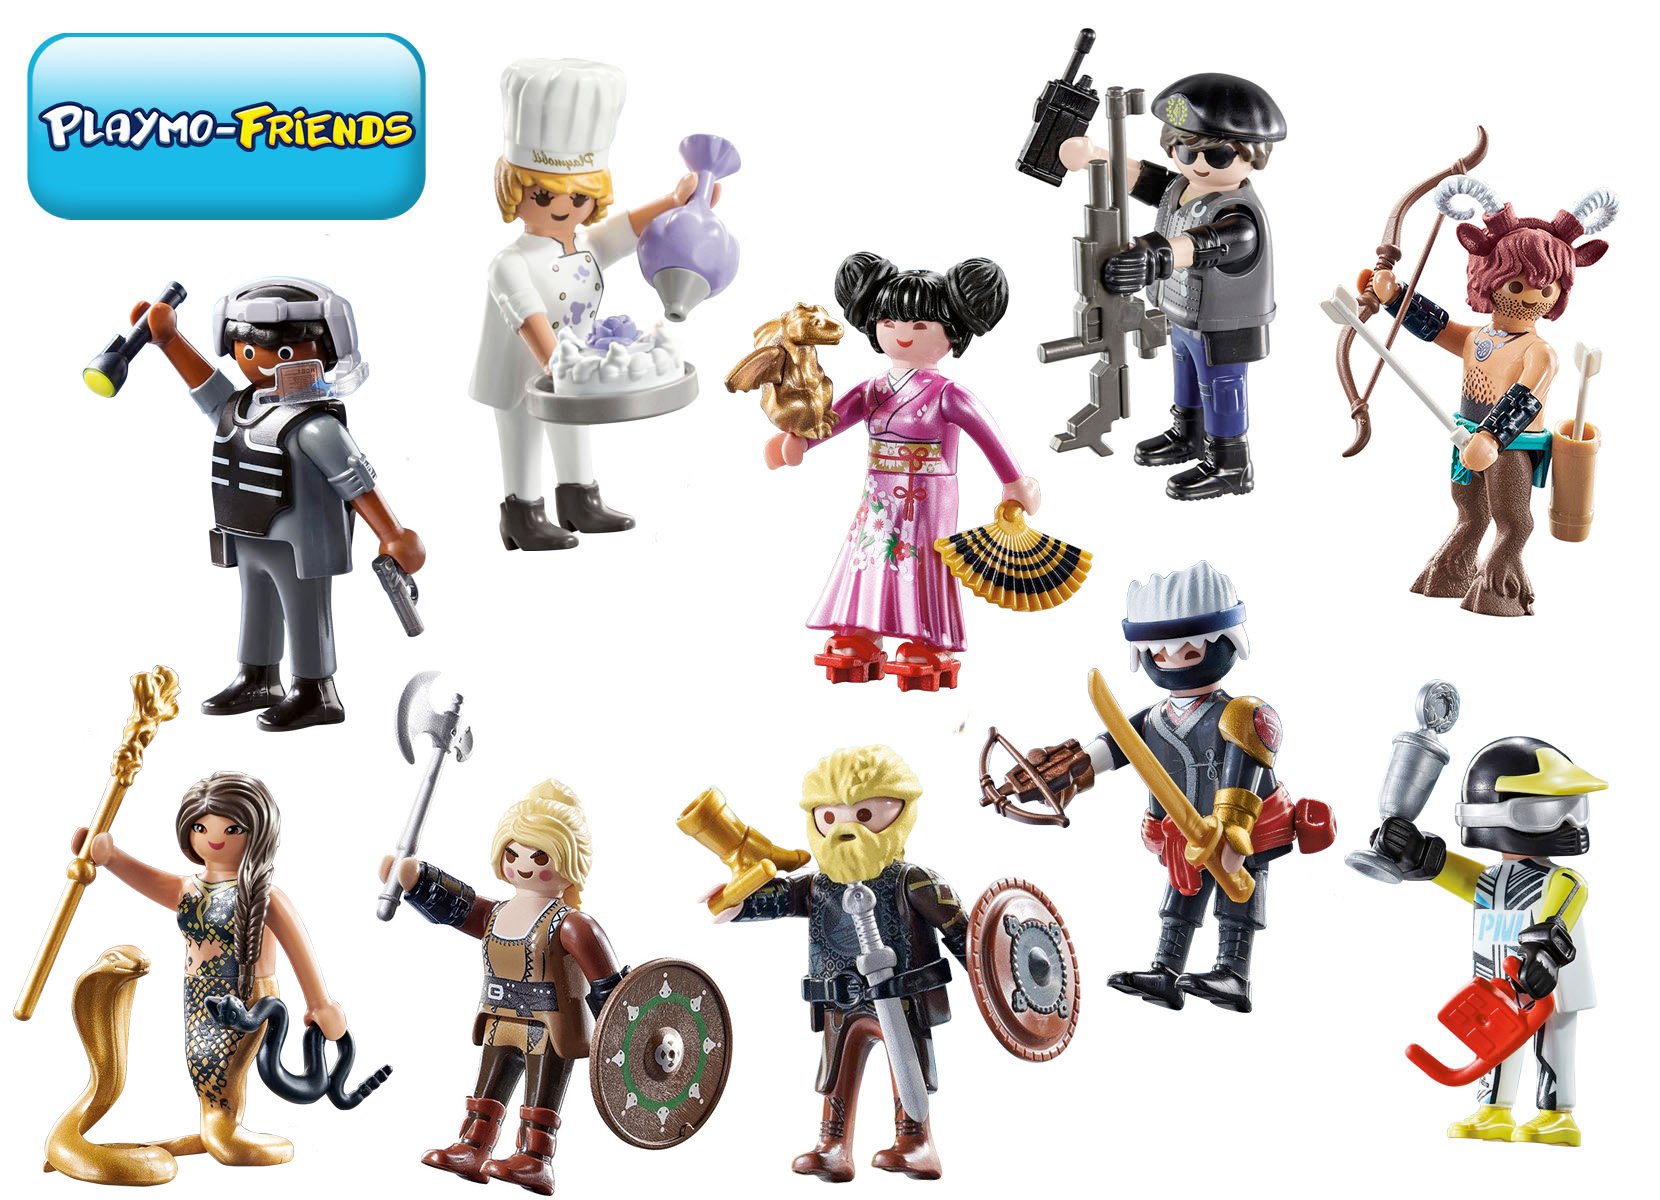 Playmobil Playmo-Friends Gemischtes Spielfiguren-Set